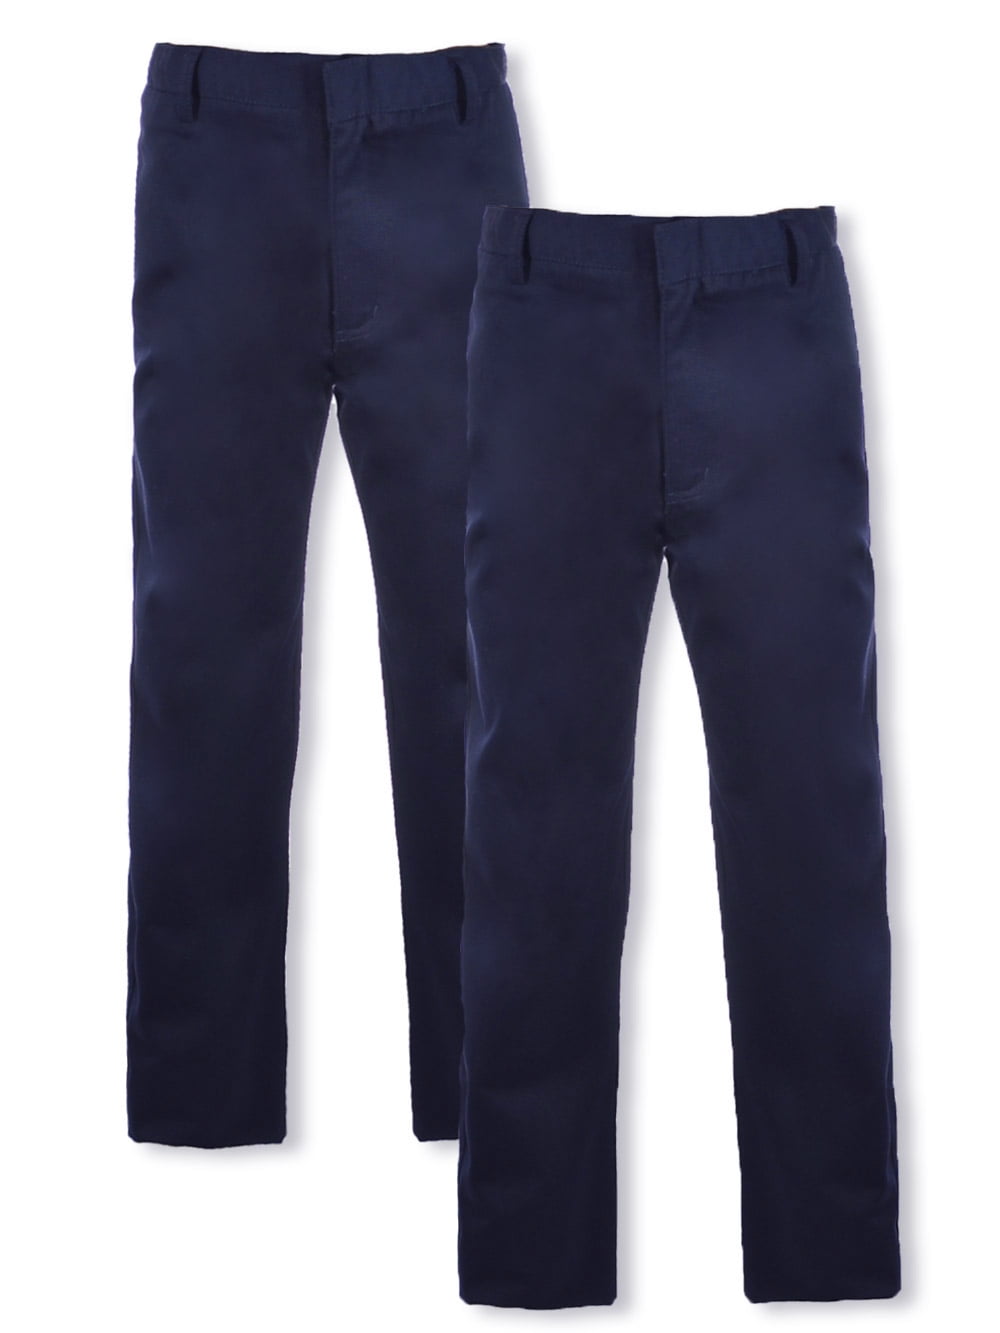 Lilgiuy Little Boys School Uniform Pants Fashion Solid Color Stretch  Elastic Adjustable Waist Slim Fit Suit Pants for School Blue (18-24 Months)  